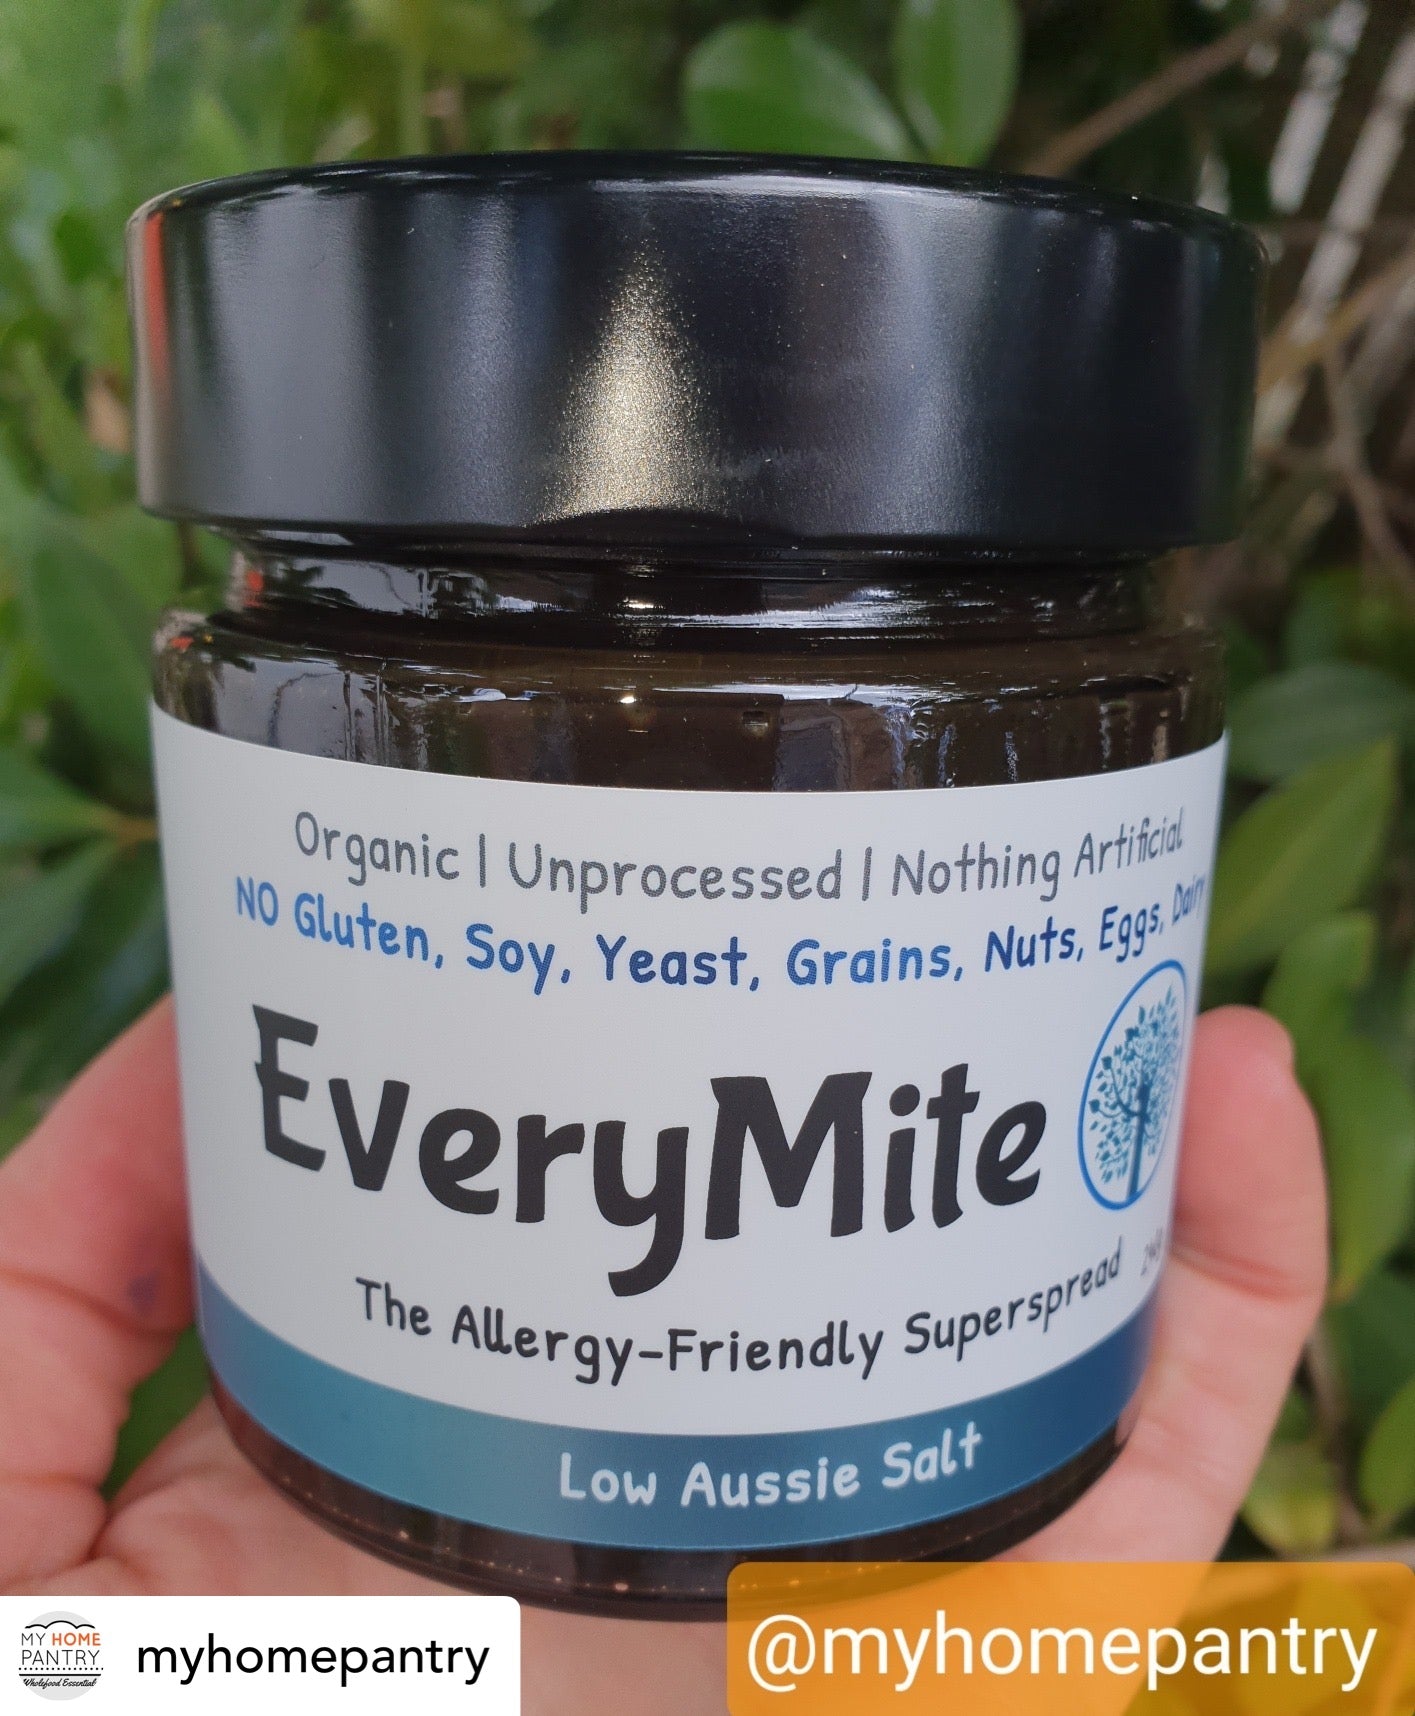 SuperSize EveryMite Low Aussie Salt 960g Tub x 1